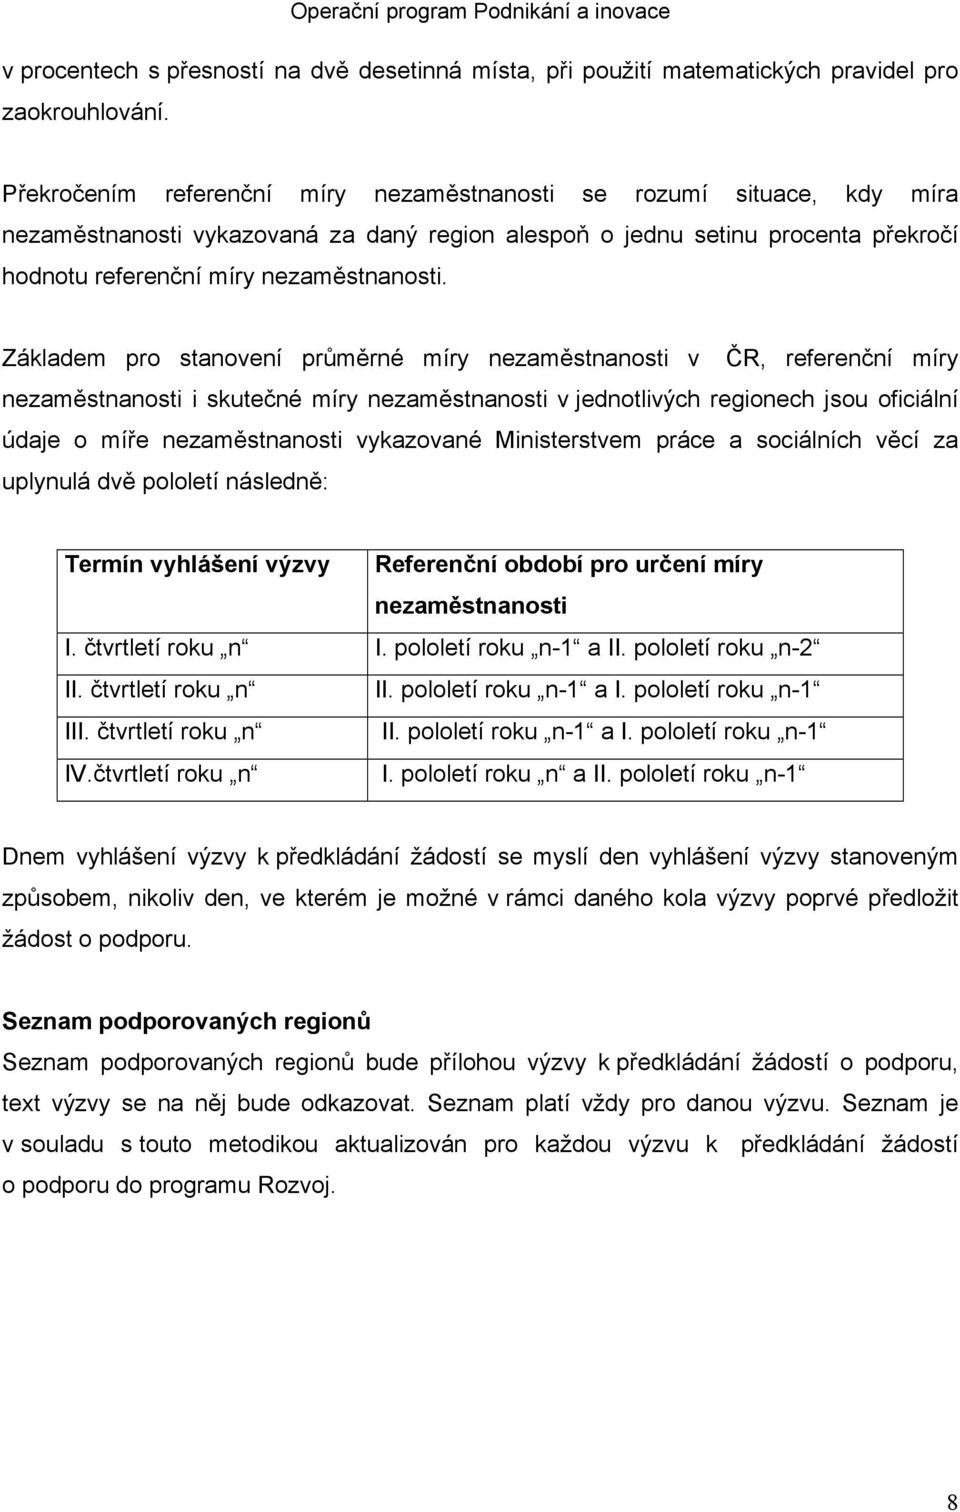 Základem pro stanovení průměrné míry nezaměstnanosti v ČR, referenční míry nezaměstnanosti i skutečné míry nezaměstnanosti v jednotlivých regionech jsou oficiální údaje o míře nezaměstnanosti